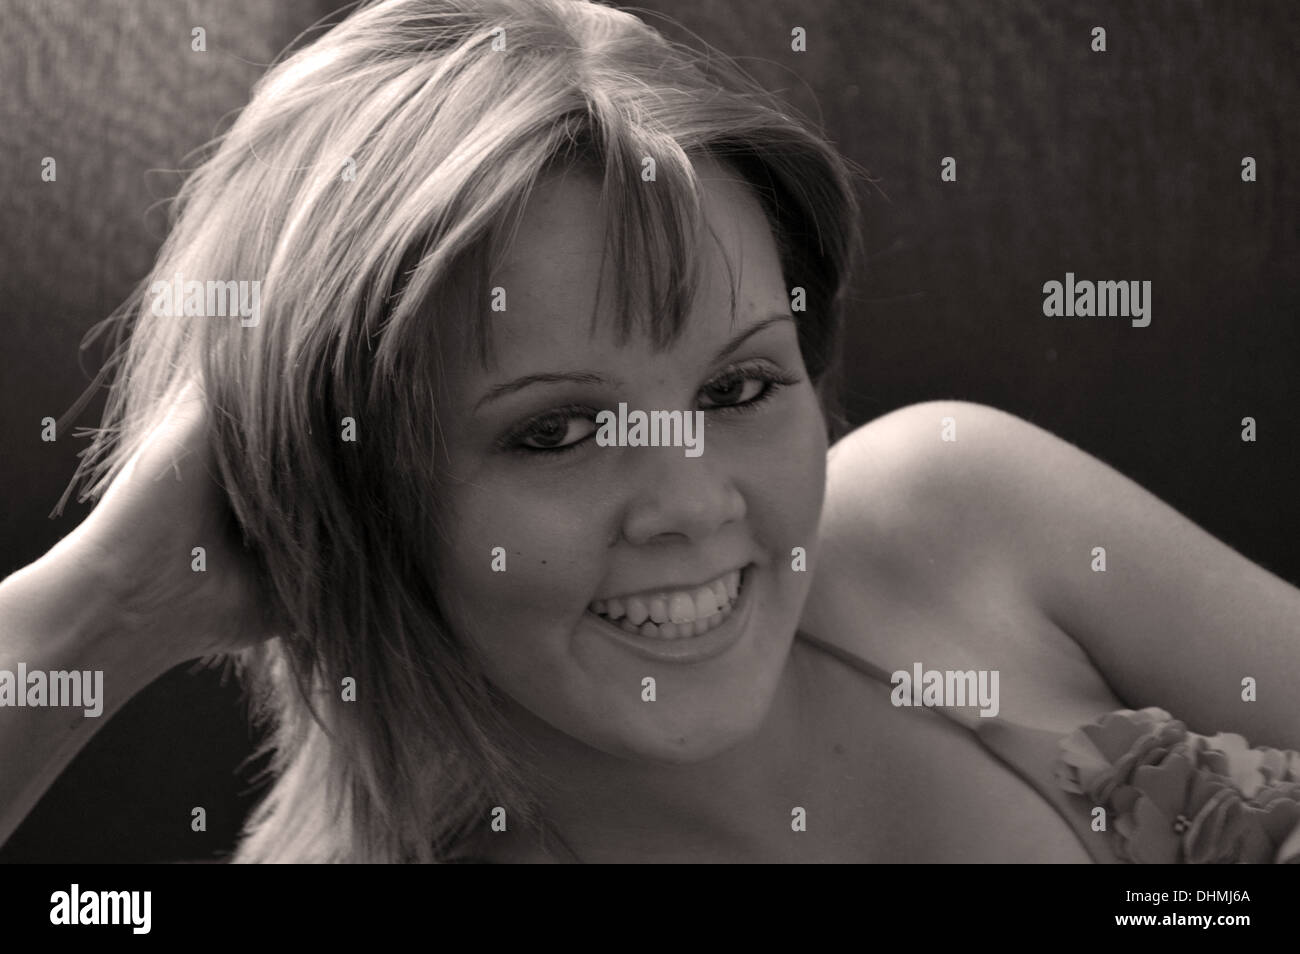 Monocromo retrato de una joven sonriente en una posición de reposo Foto de stock